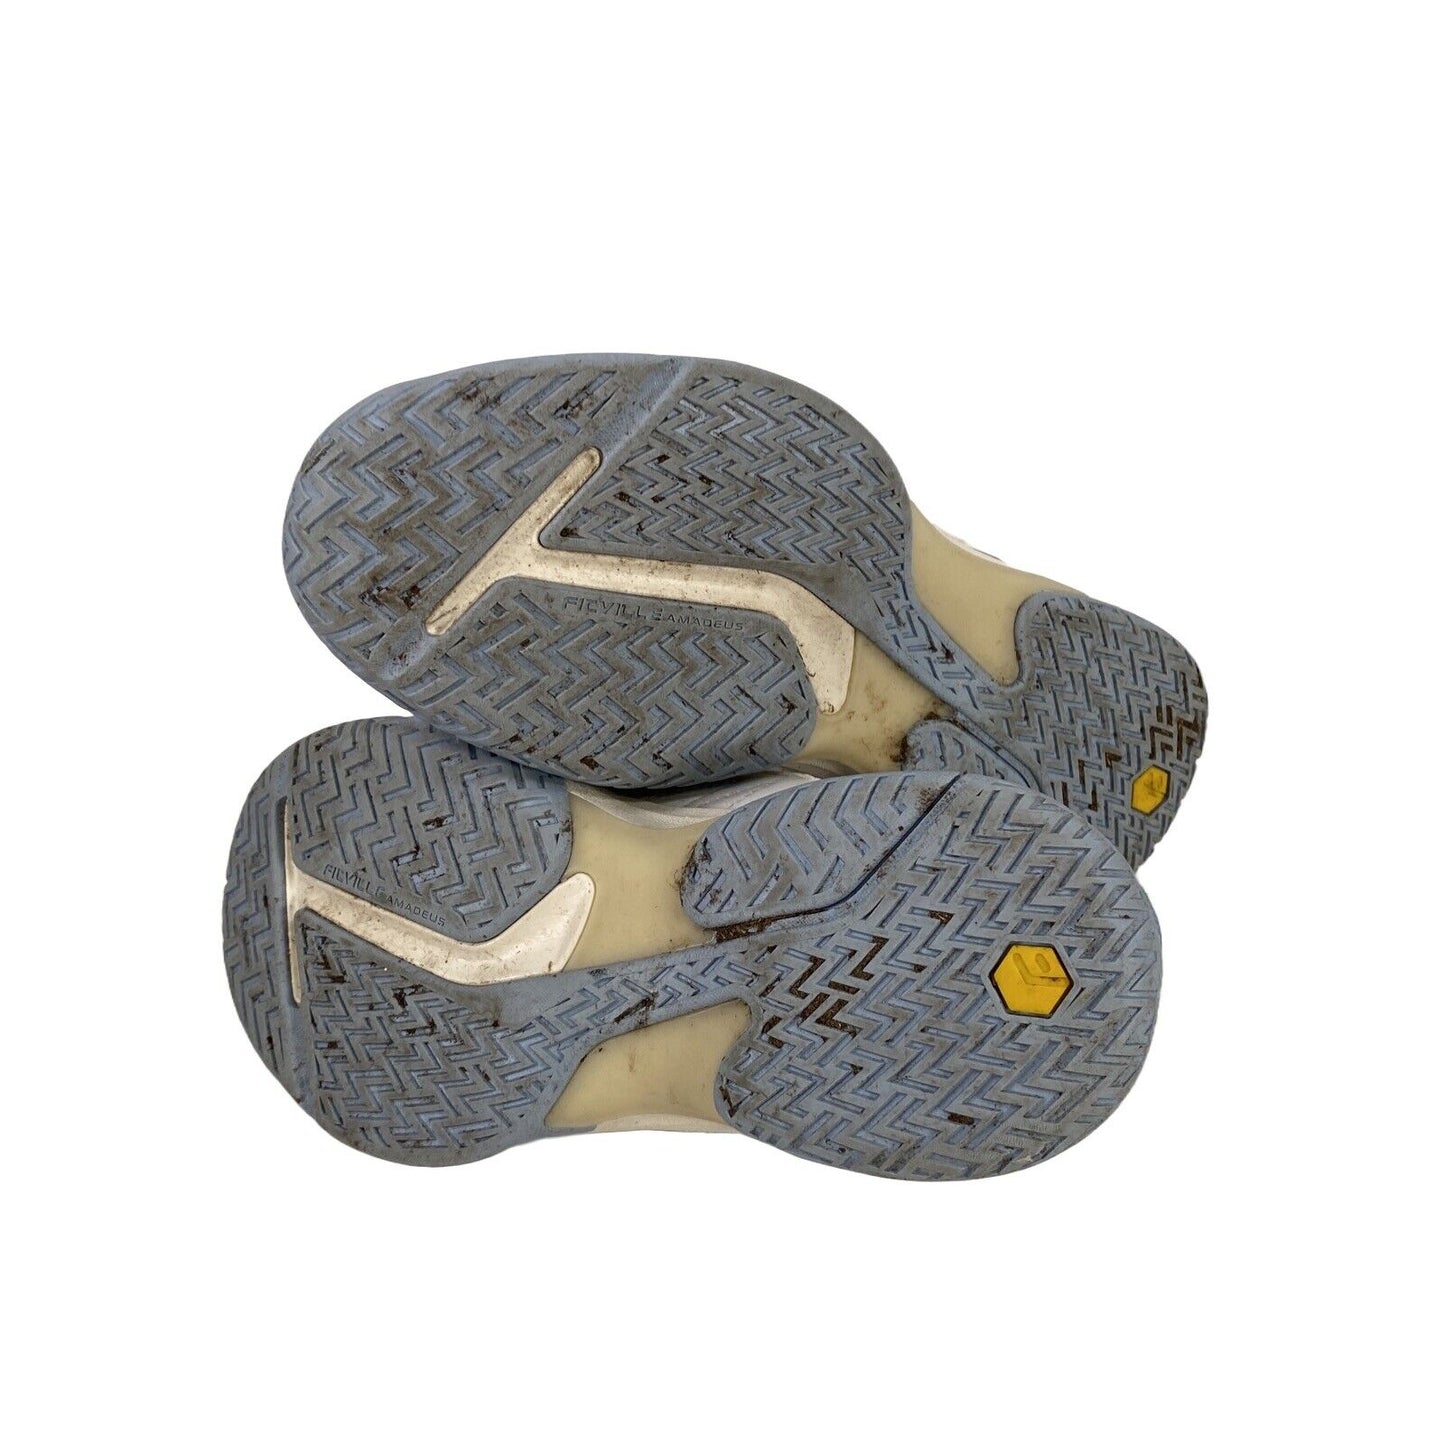 FitVille - Zapatos cómodos para caminar con cordones, color blanco y azul, para mujer, 8 de ancho